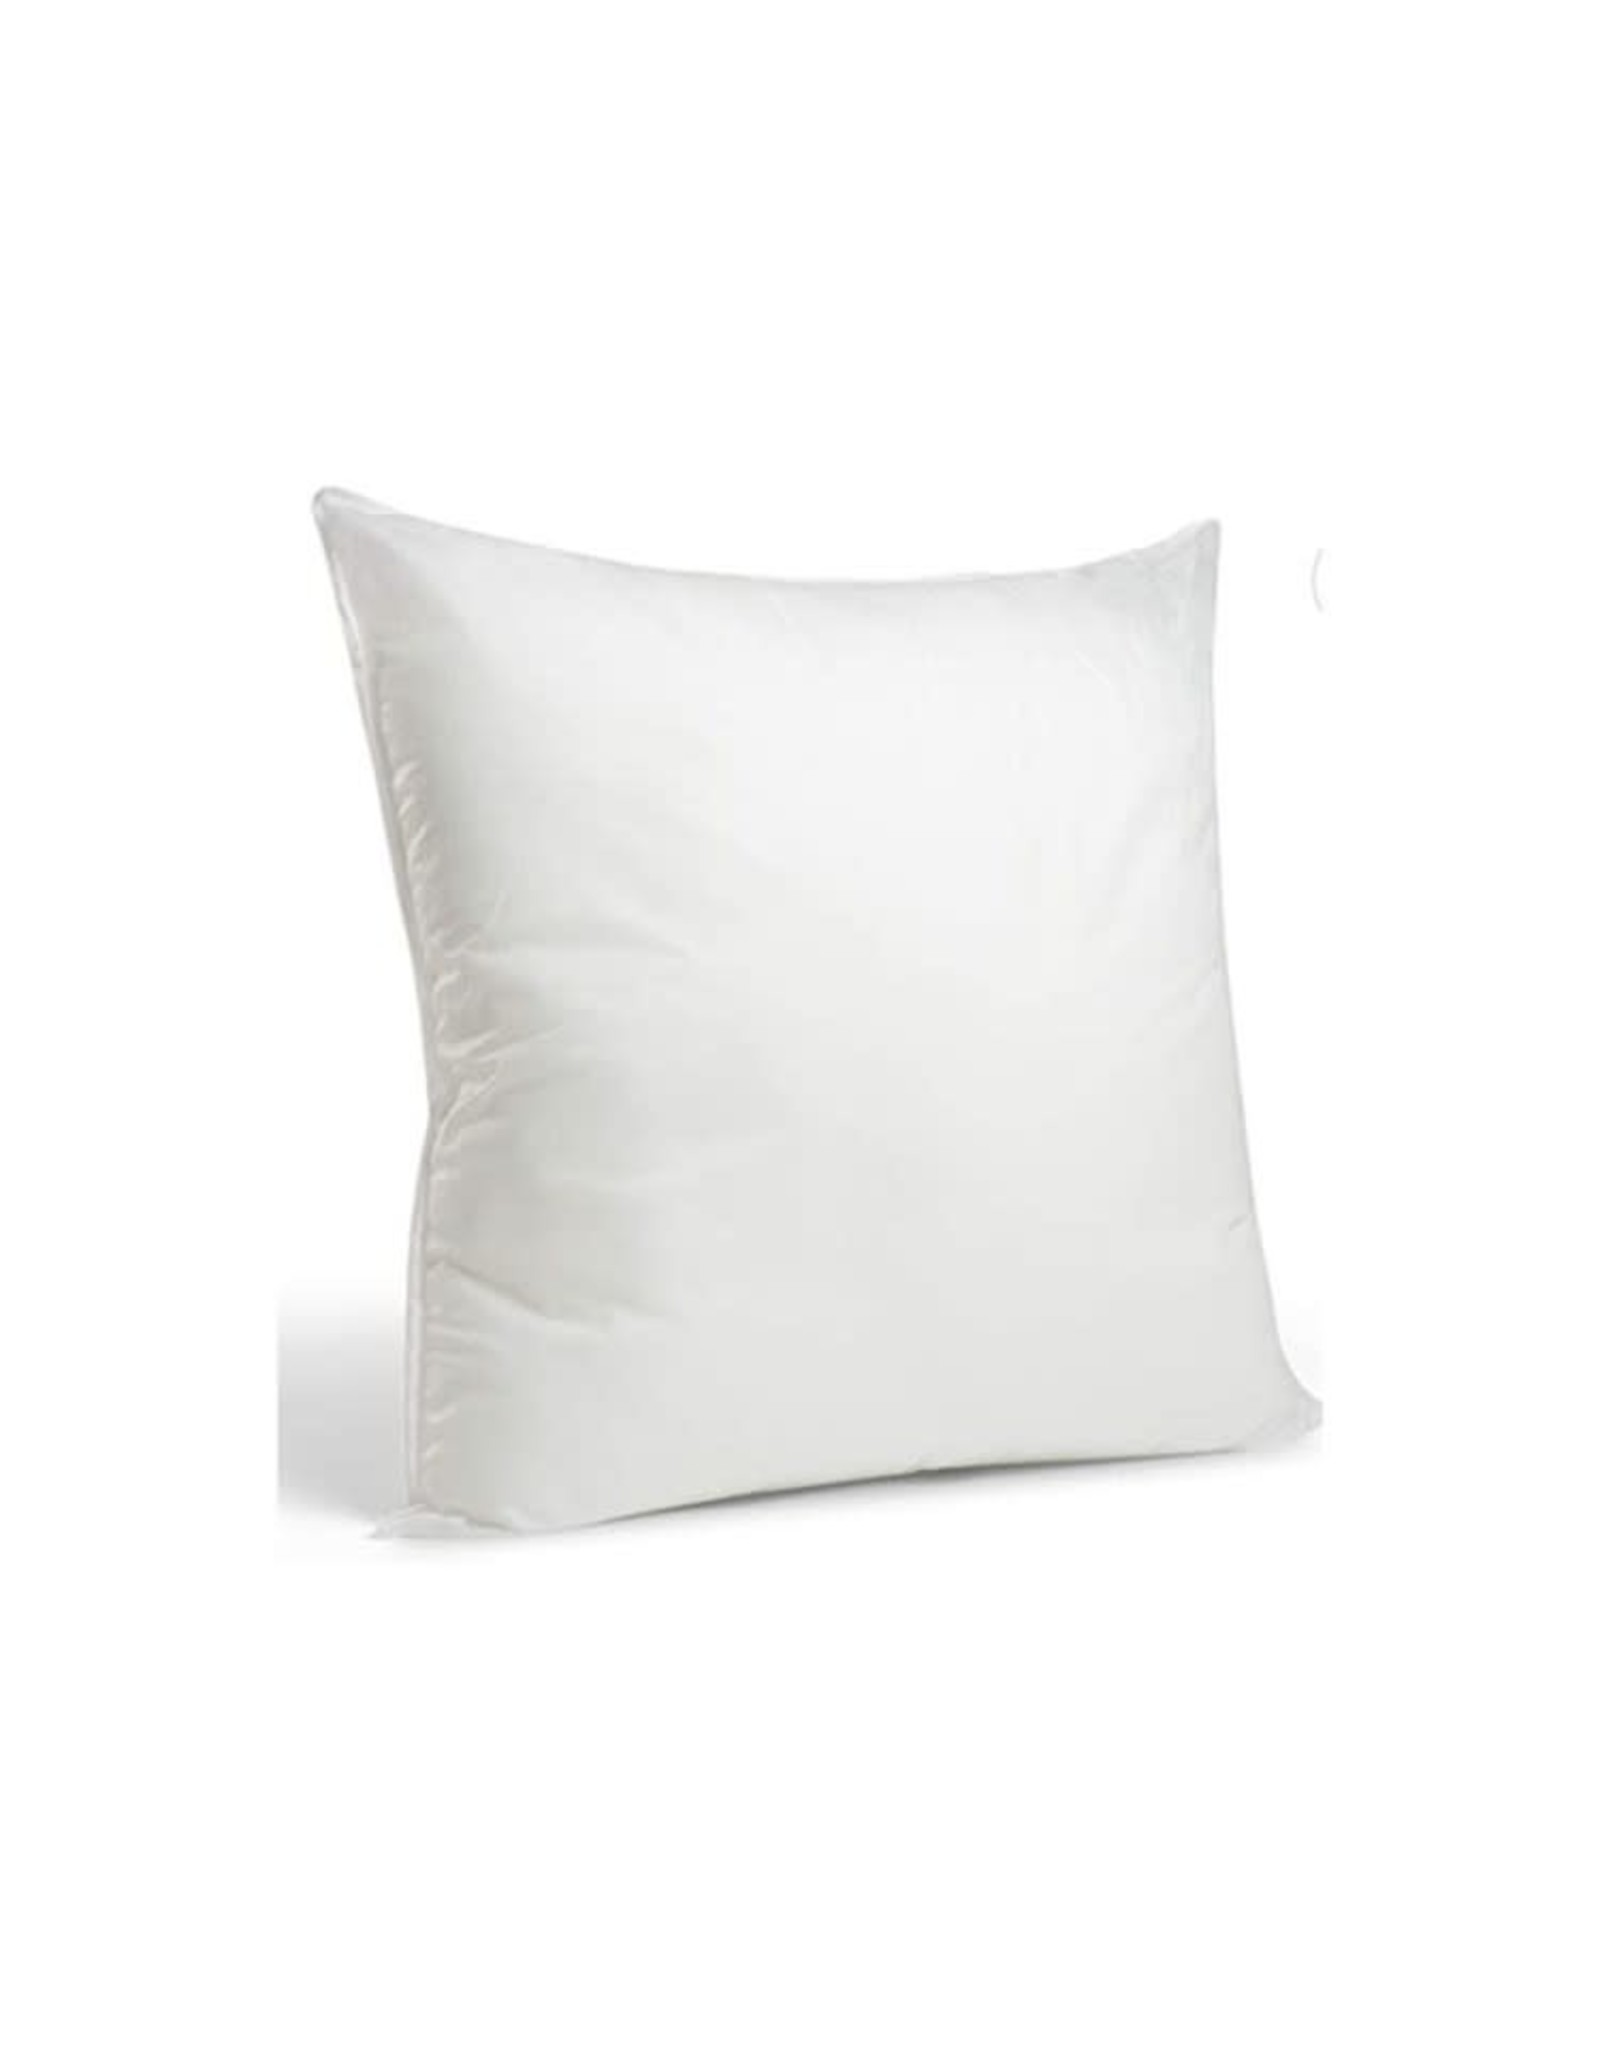 Tide | Hill Pillow Insert | 16x16 Inch Pillow Form